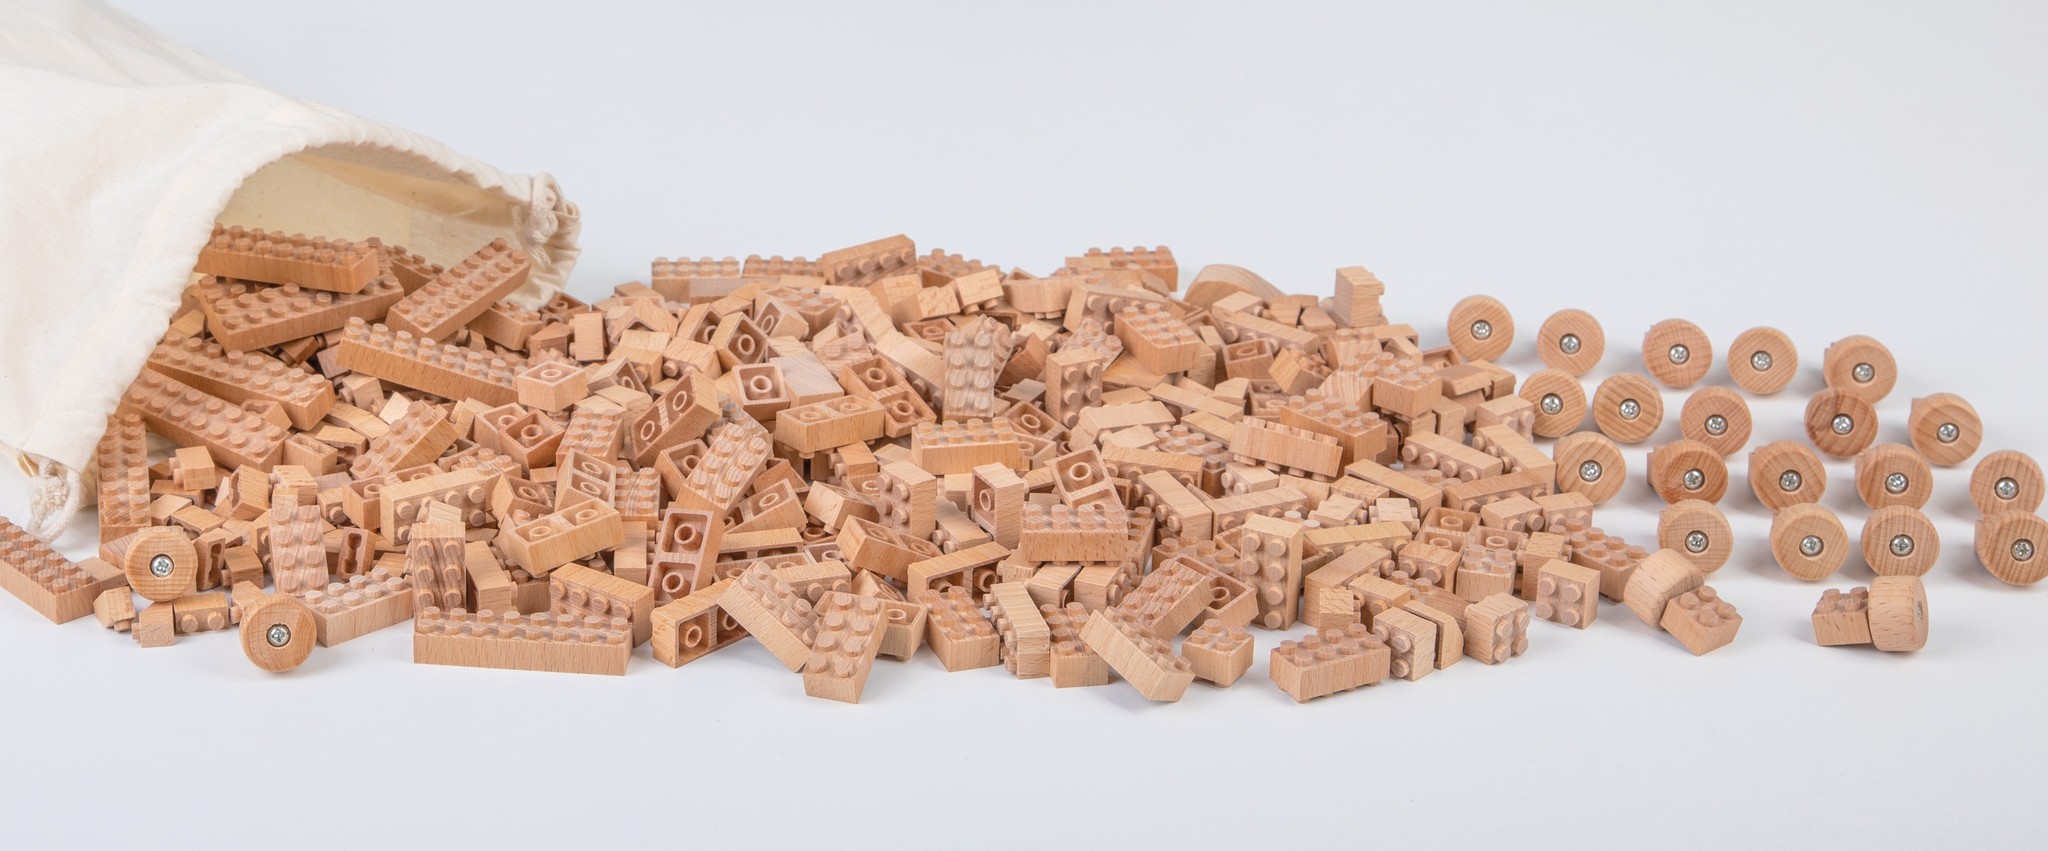 Ontrouw Aanbeveling Doorzichtig Houten bouwblokken verbouwbaar met Lego - Kinderspel ®